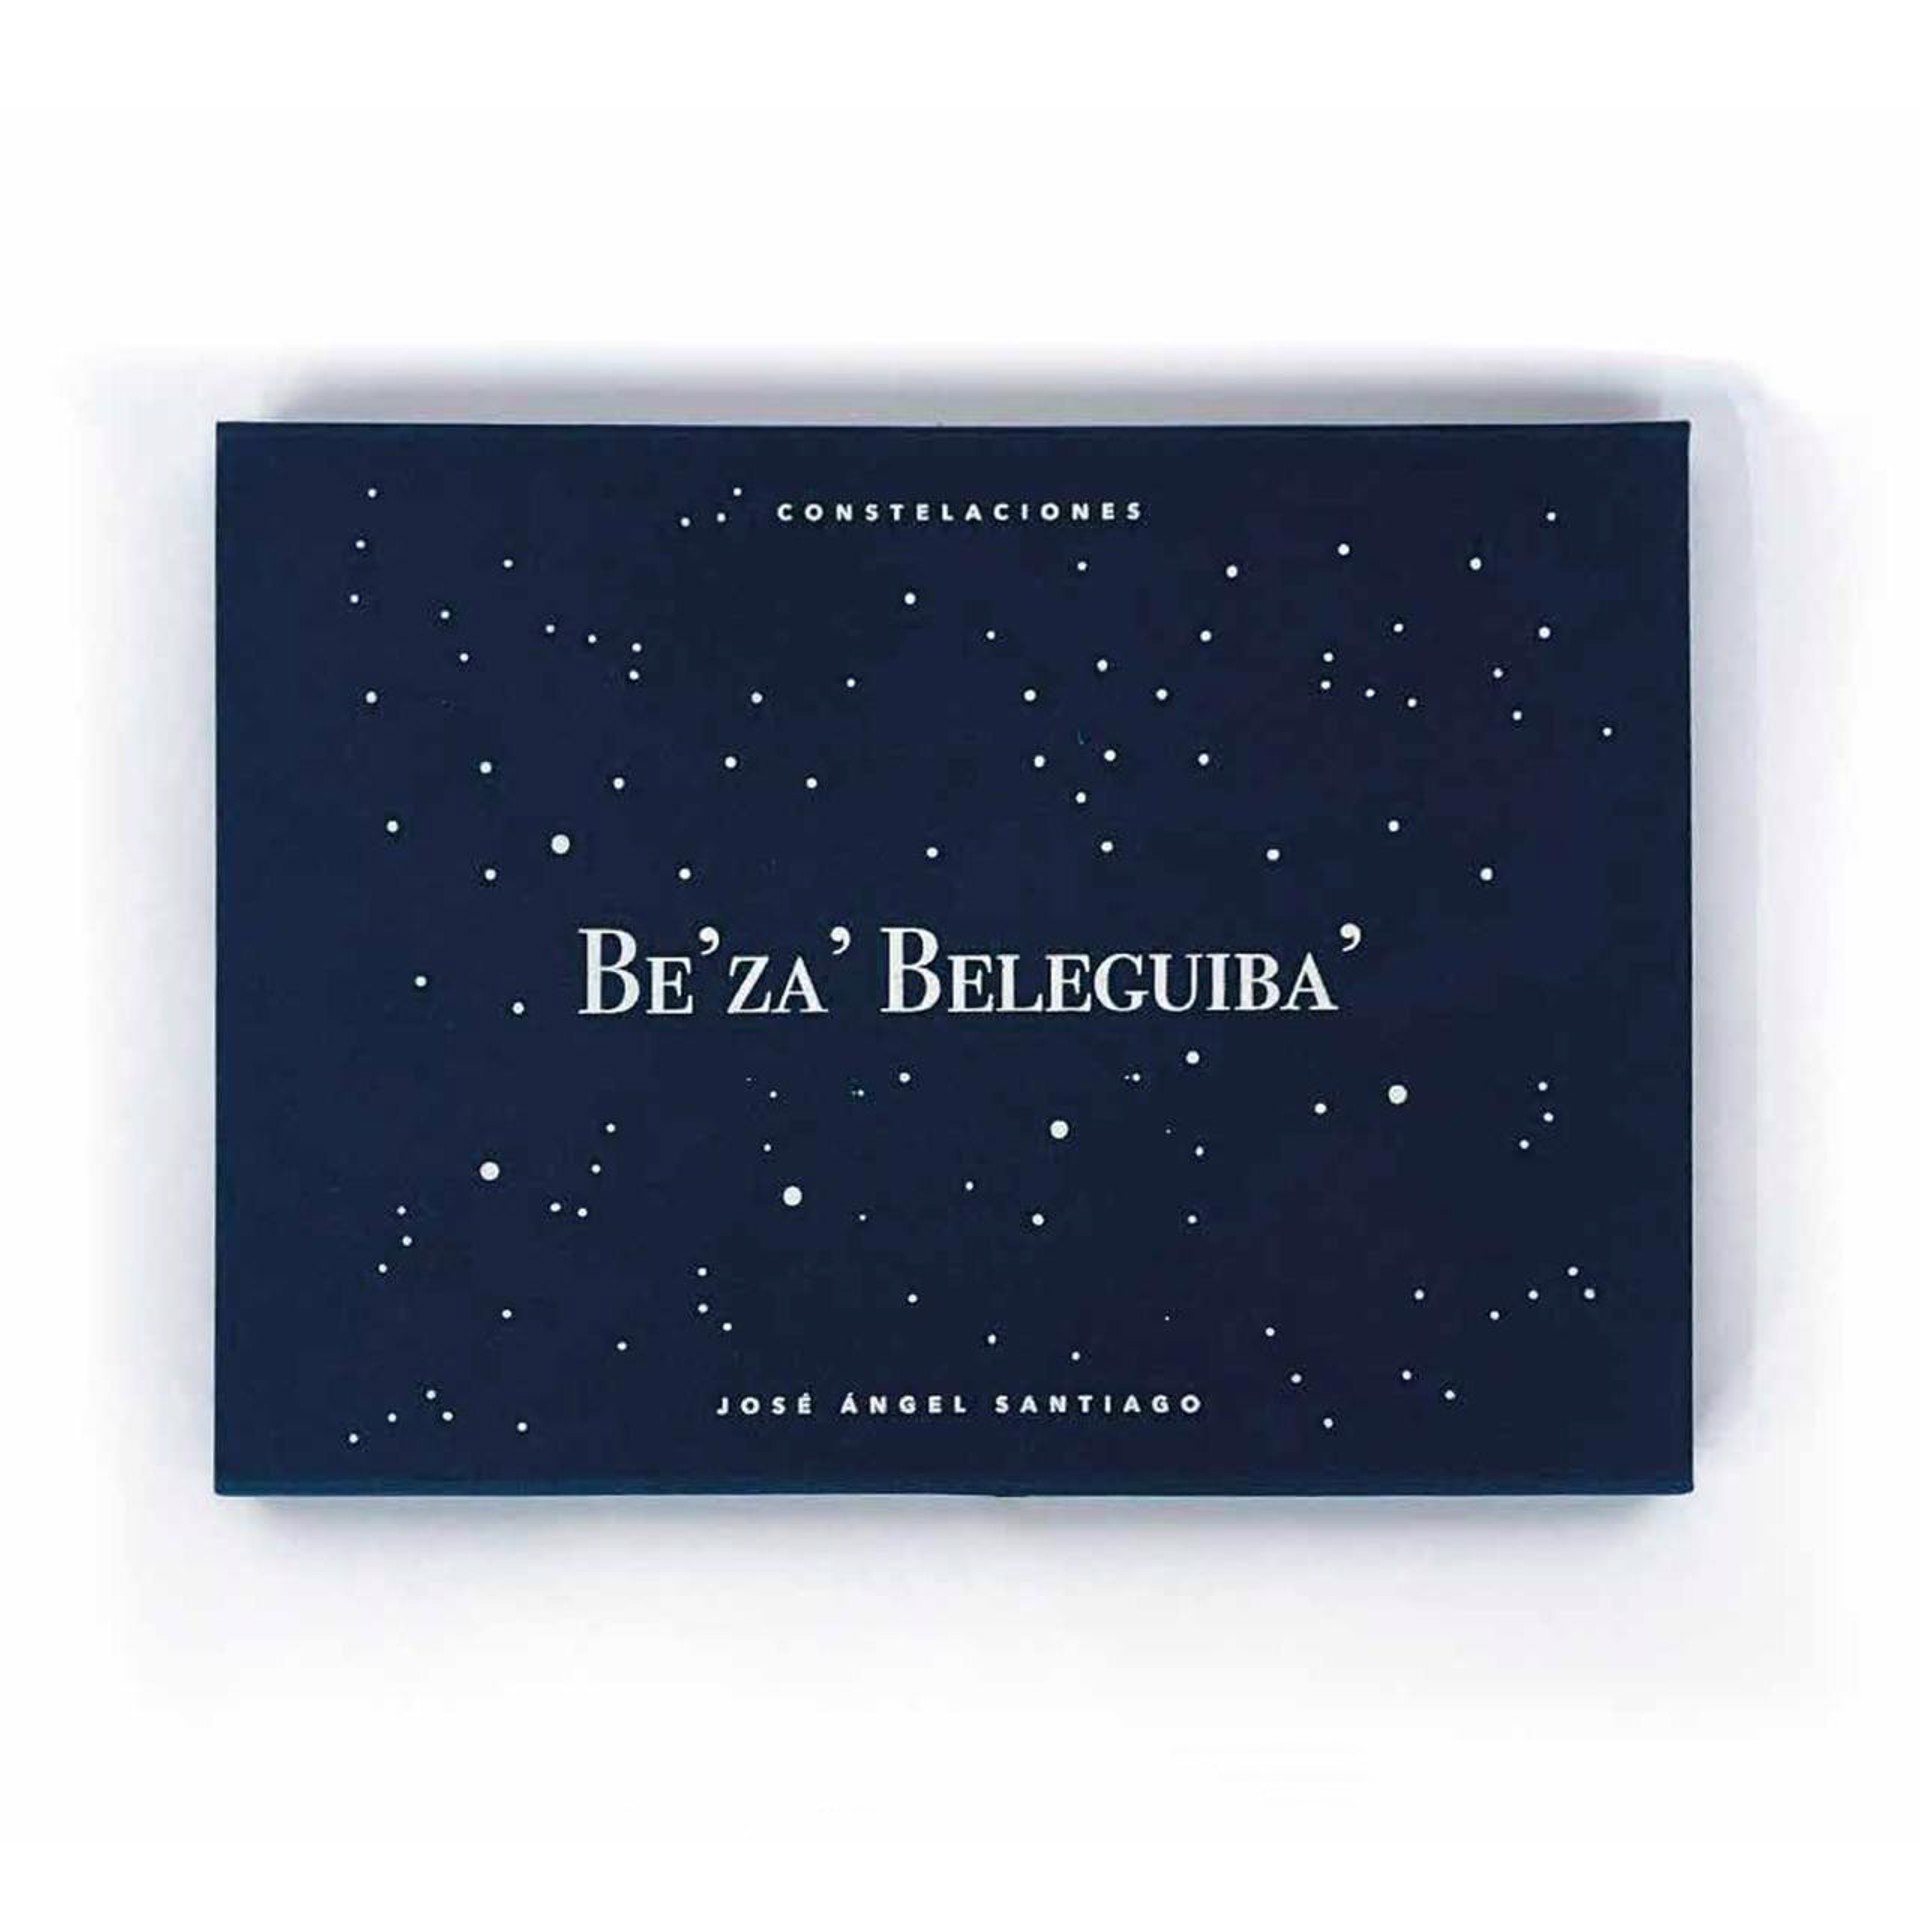 Be’za’ Beleguiba’ / Constelaciones Zapotecas by Jose Angel Santiago